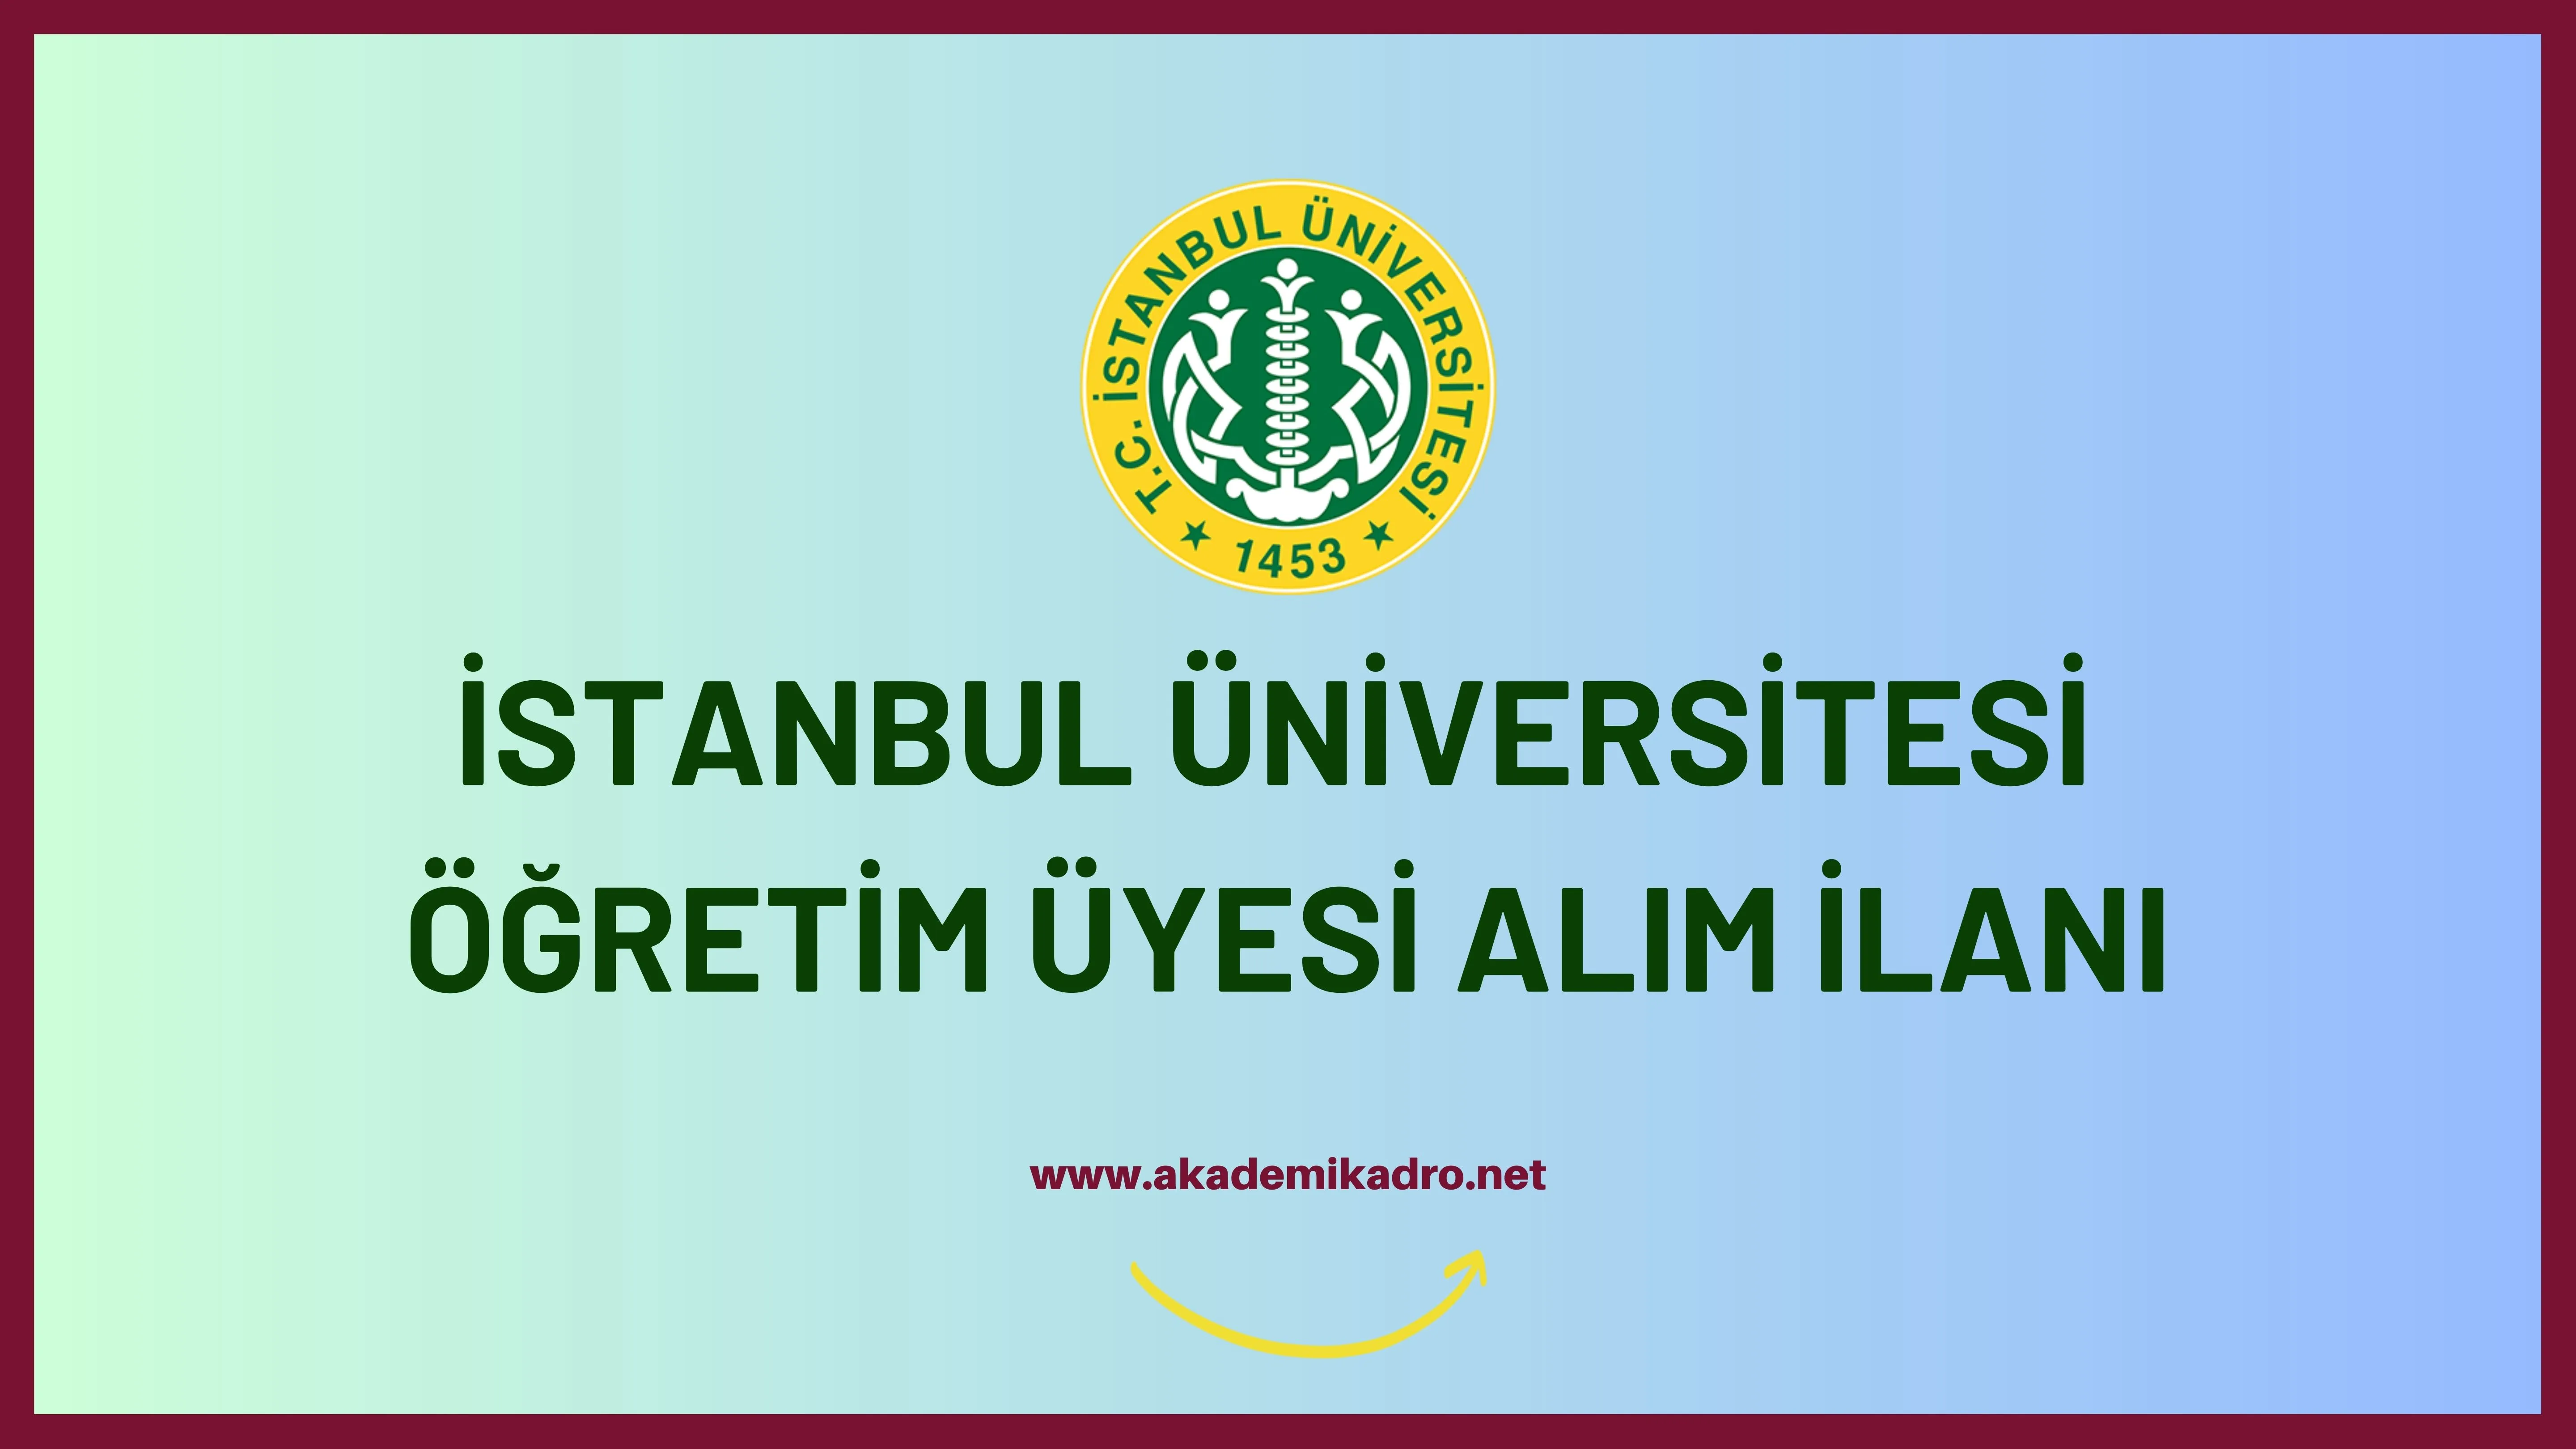 İstanbul Üniversitesi birçok alandan 10 Öğretim üyesi alacak.